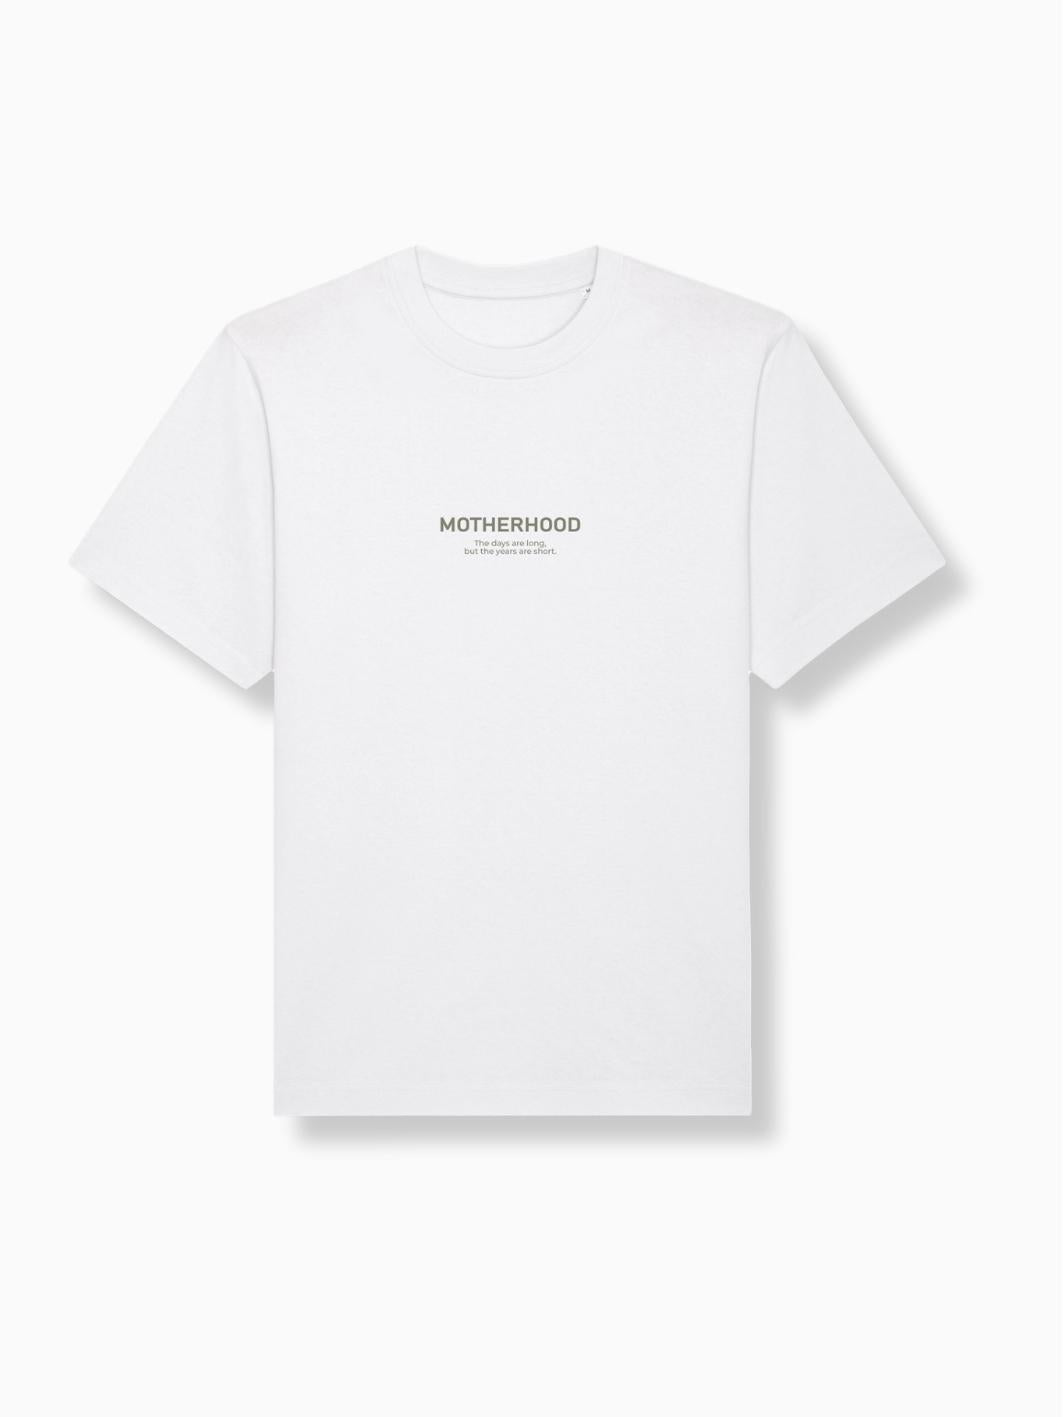 MOTHERHOOD - Damen T-Shirt weiß - FAMVIBES 